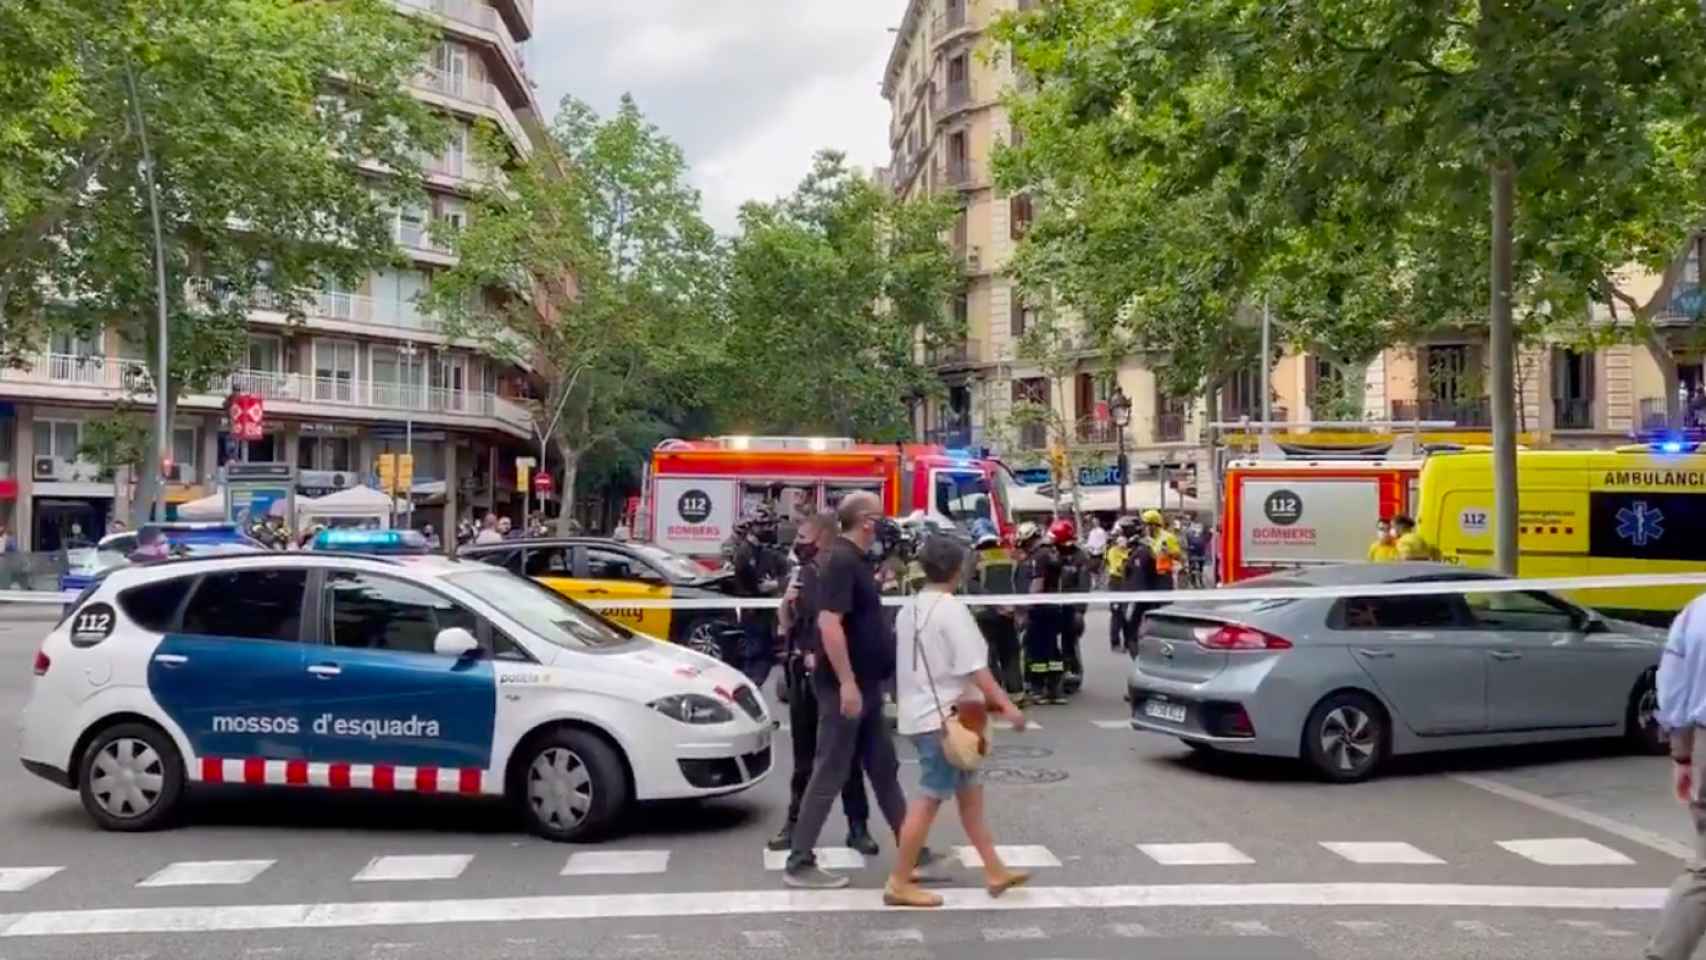 Accidente de tráfico en el centro de Barcelona en una imagen de archivo / LA SEXTA